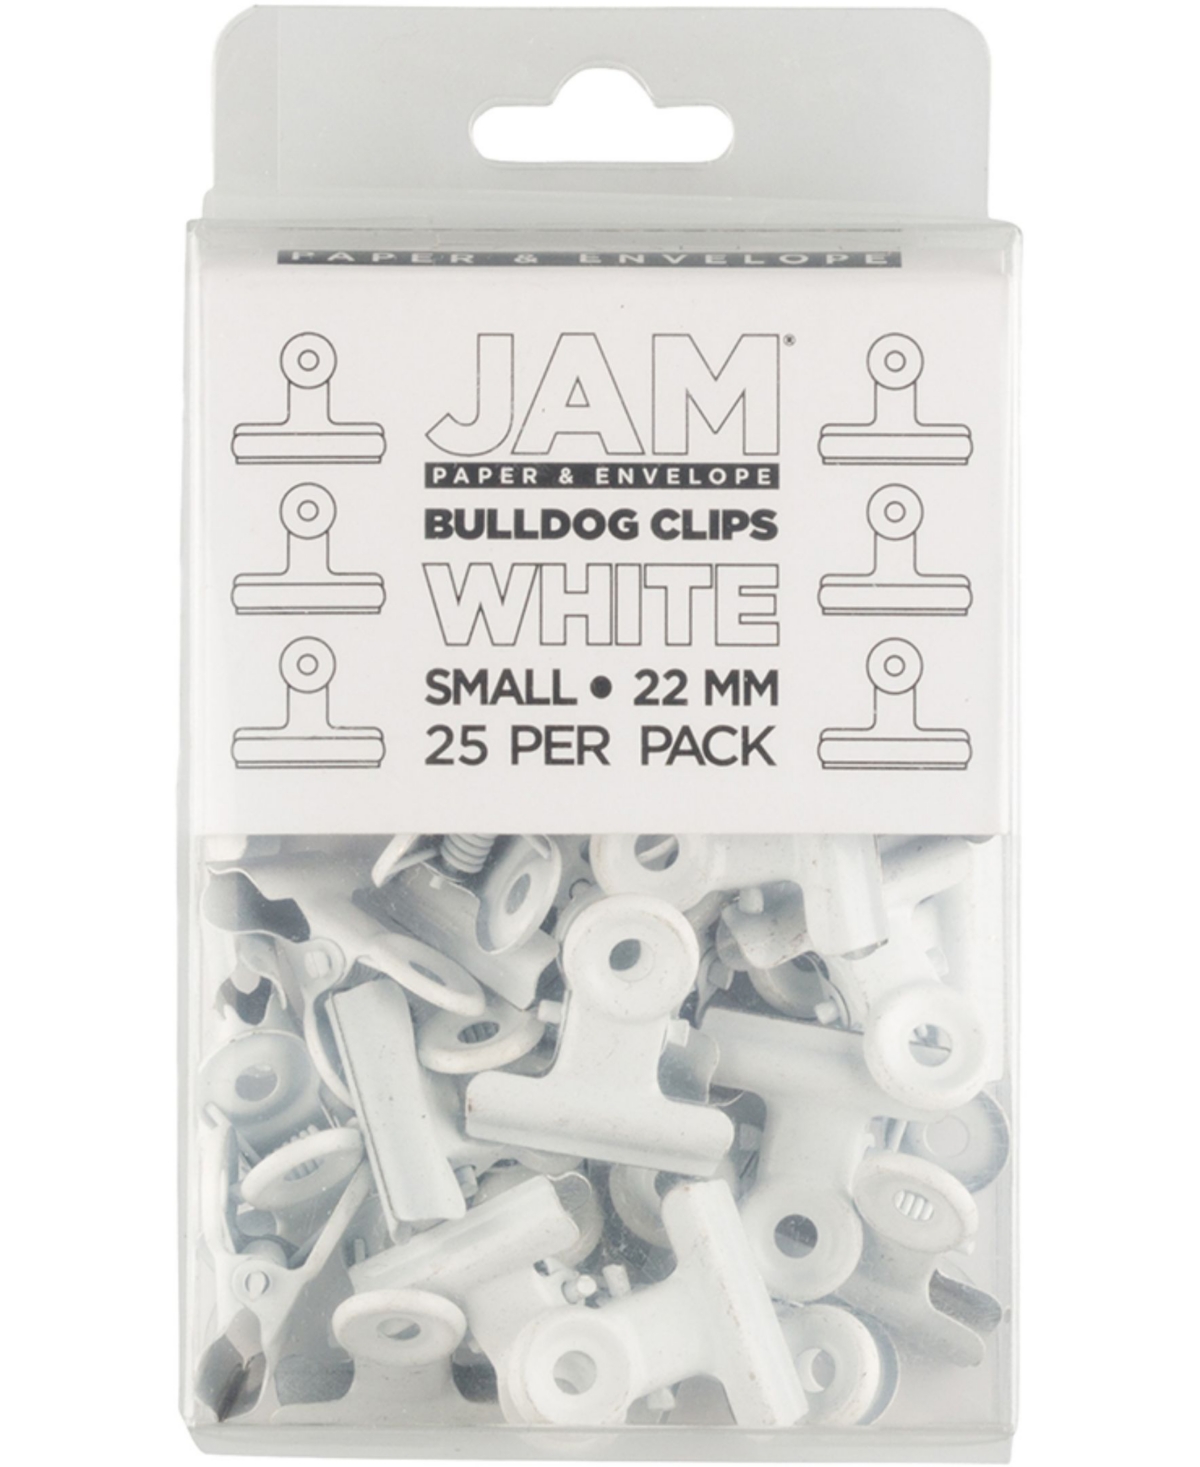 Jam Paper Metal Bulldog Clips In White